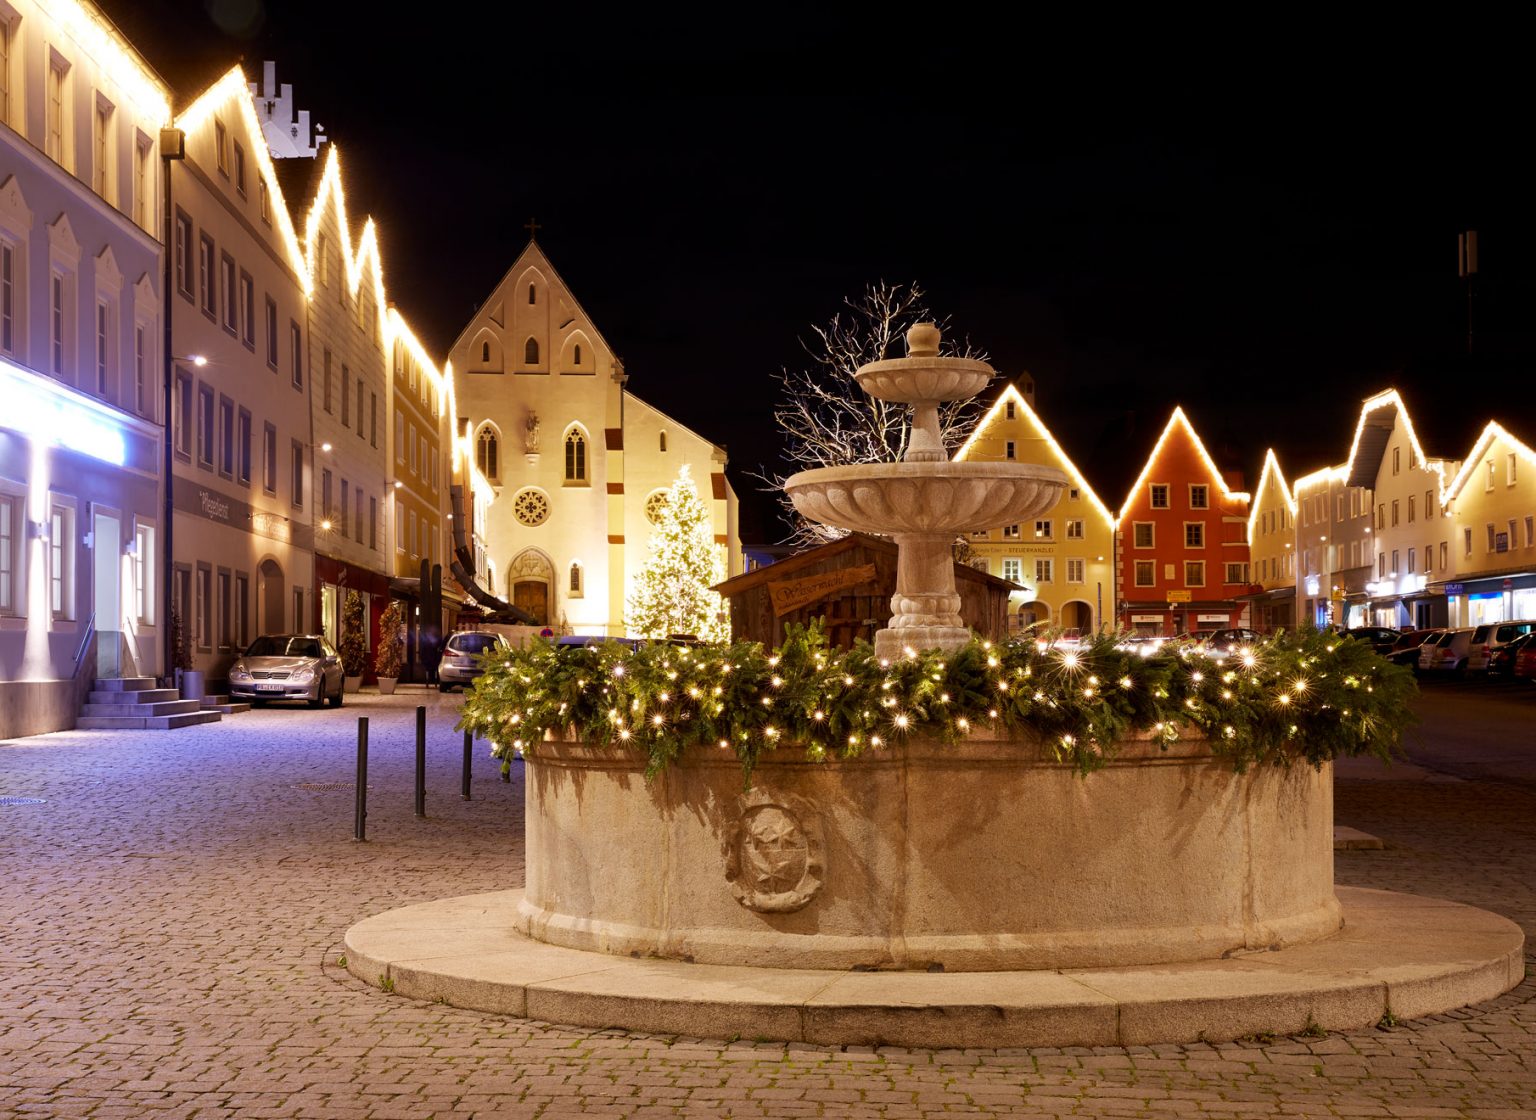 Weihnachtsbeleuchtung am Marktplatz in Markt Aidenbach, Deutschland